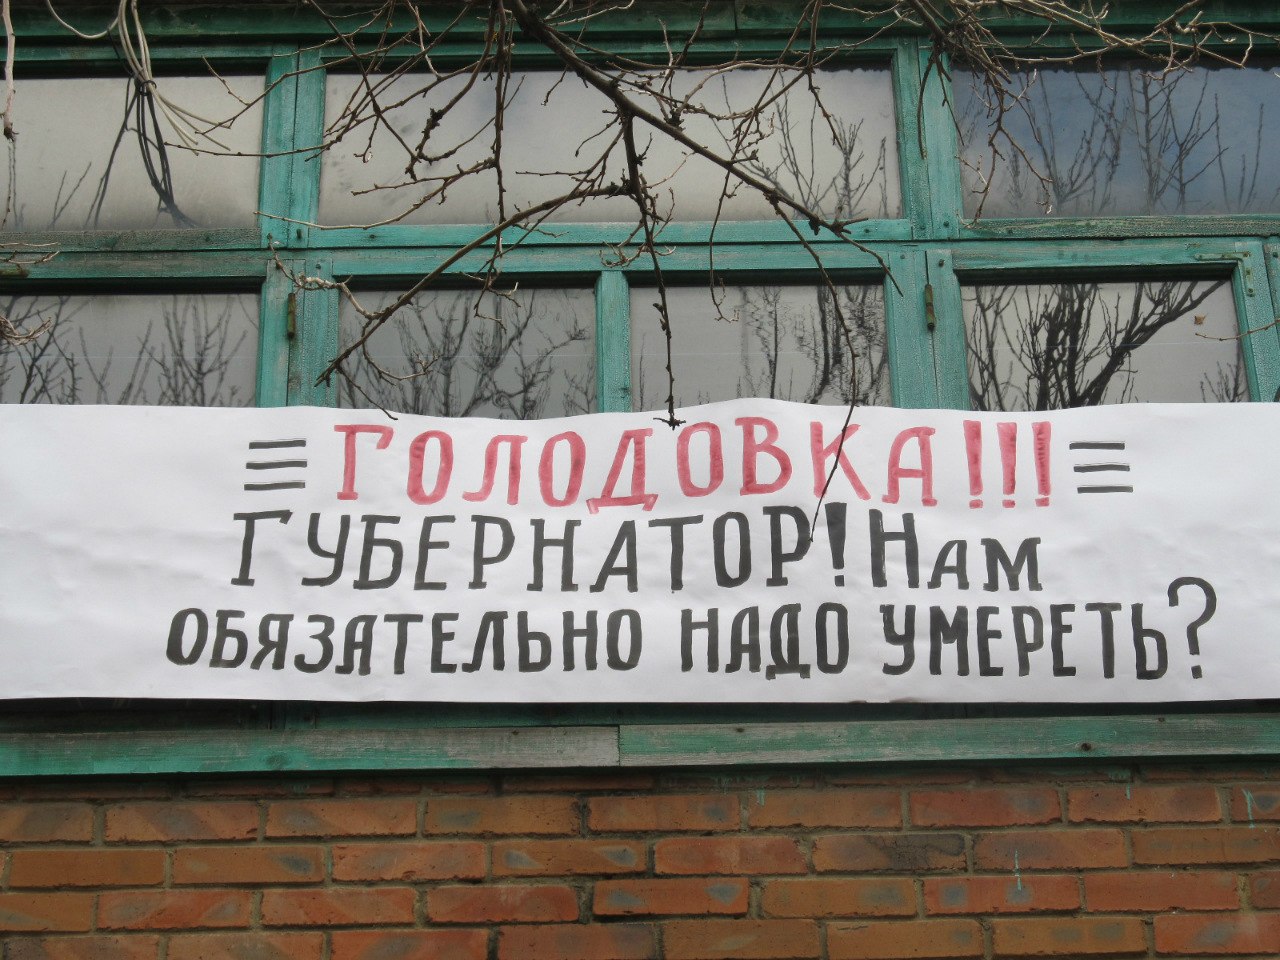 Жители города Зверево объявили голодовку 